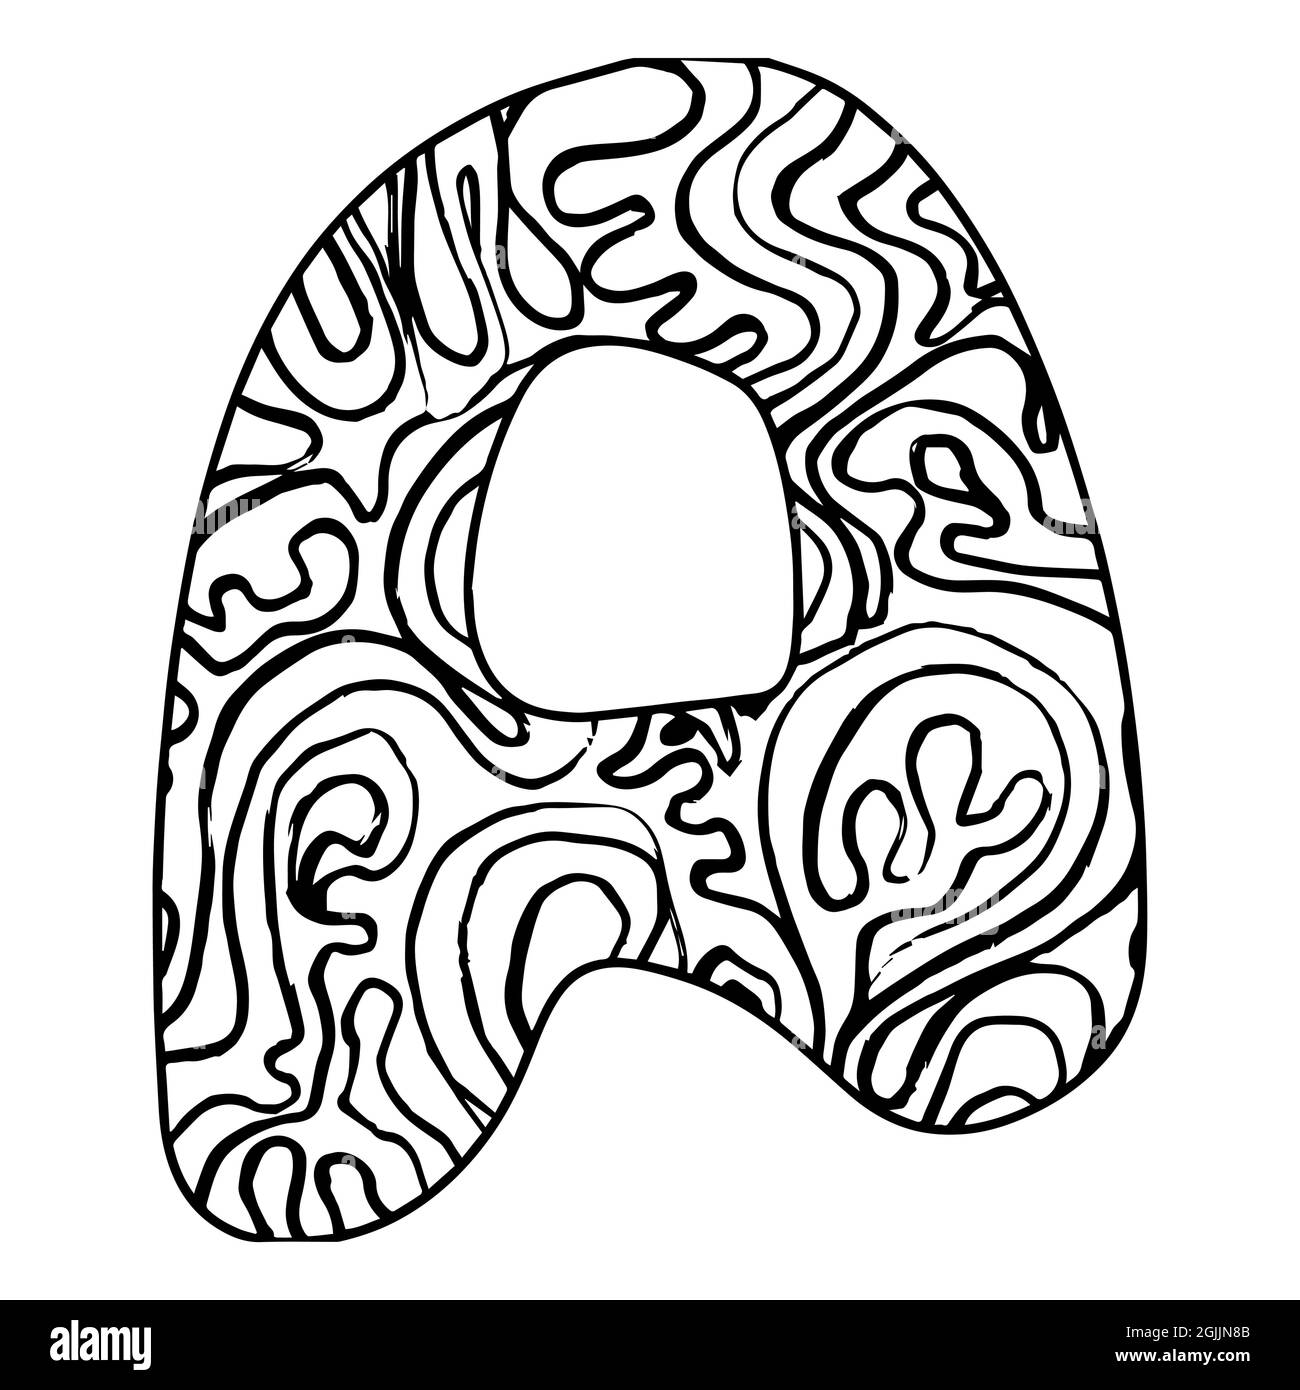 Lettre stylisée Zentangle - lettre A. Doodle noir blanc dessiné à la main. Modèle ethnique. Page de coloriage antistress pour adultes, africain, indien, totem. Illustration de Vecteur